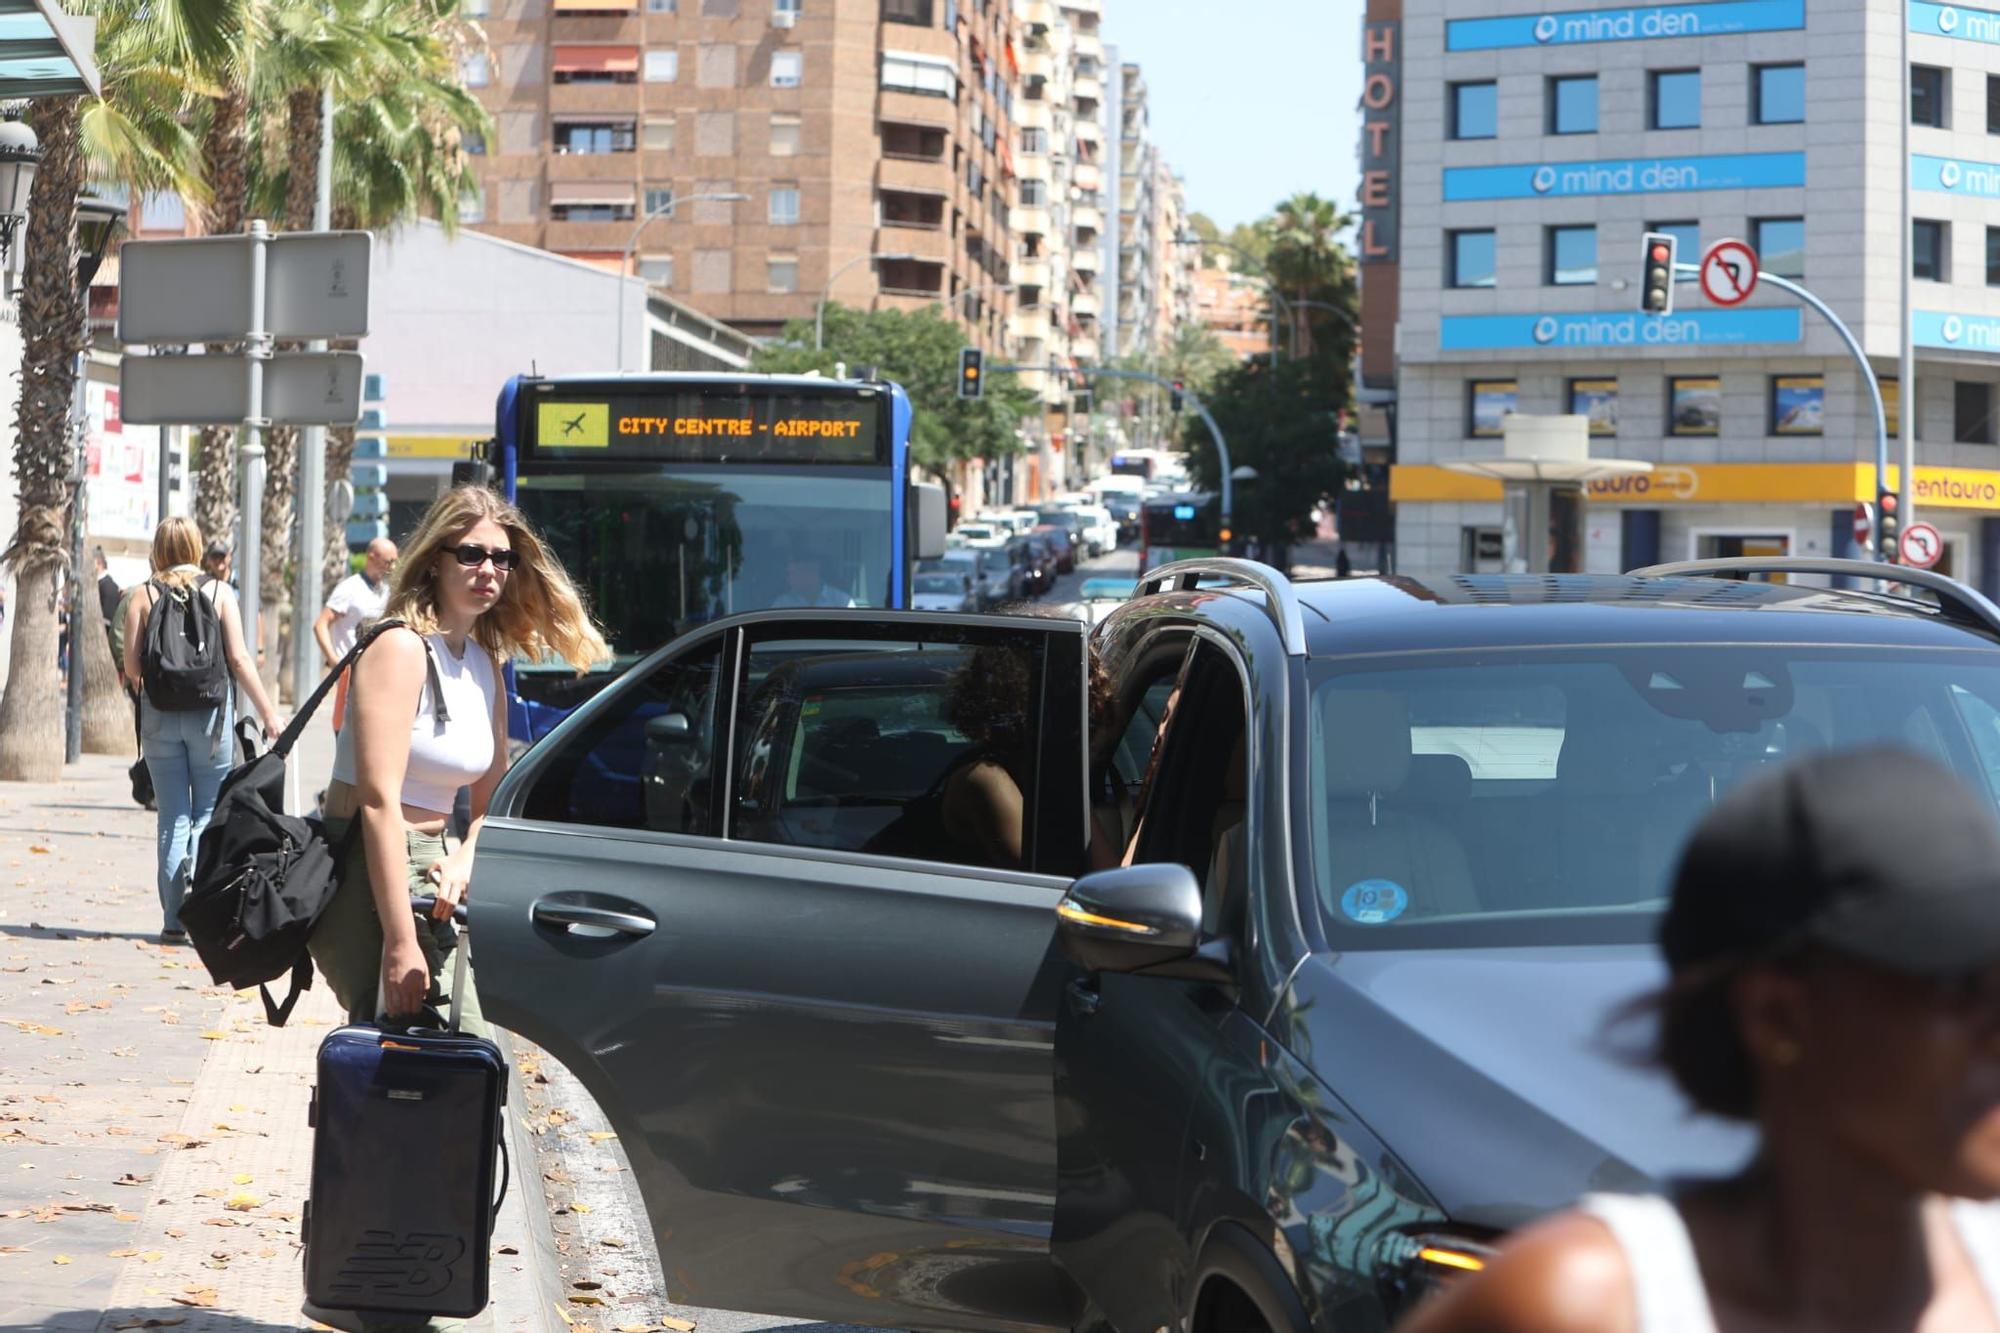 Continúa el colapso en Alicante: interminables atascos en las principales calles de la ciudad